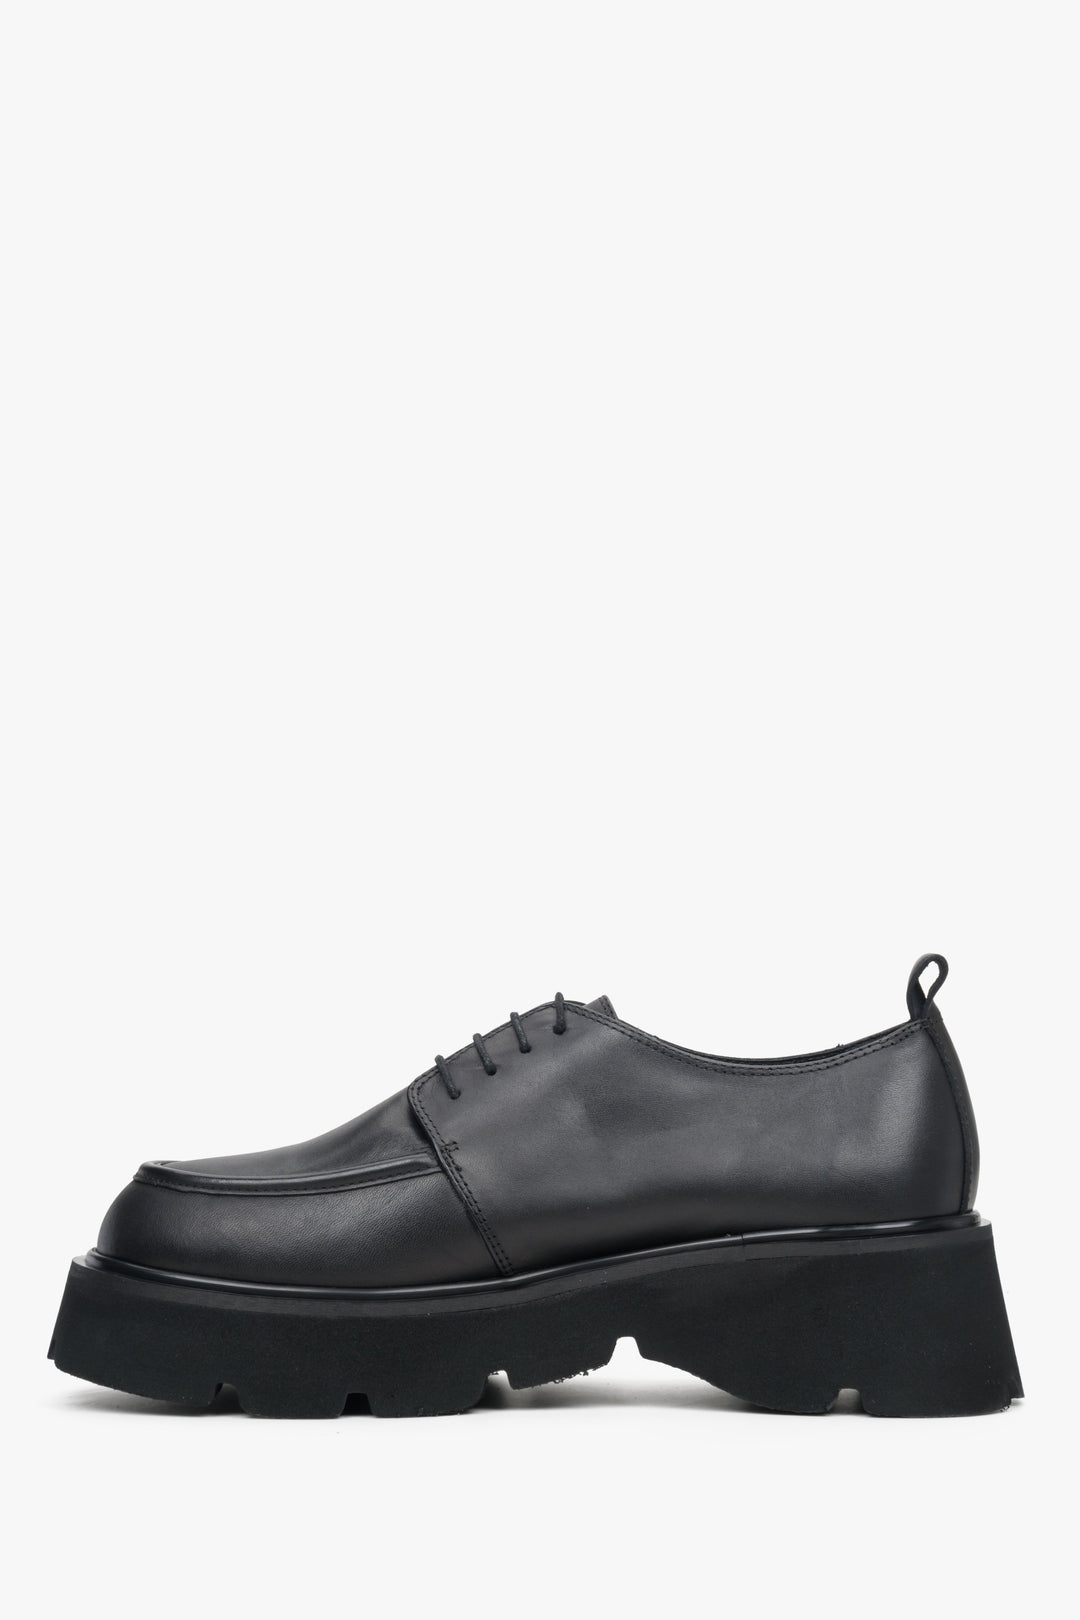 Women's black leather lace-up shoes by Estro - shoe profile.